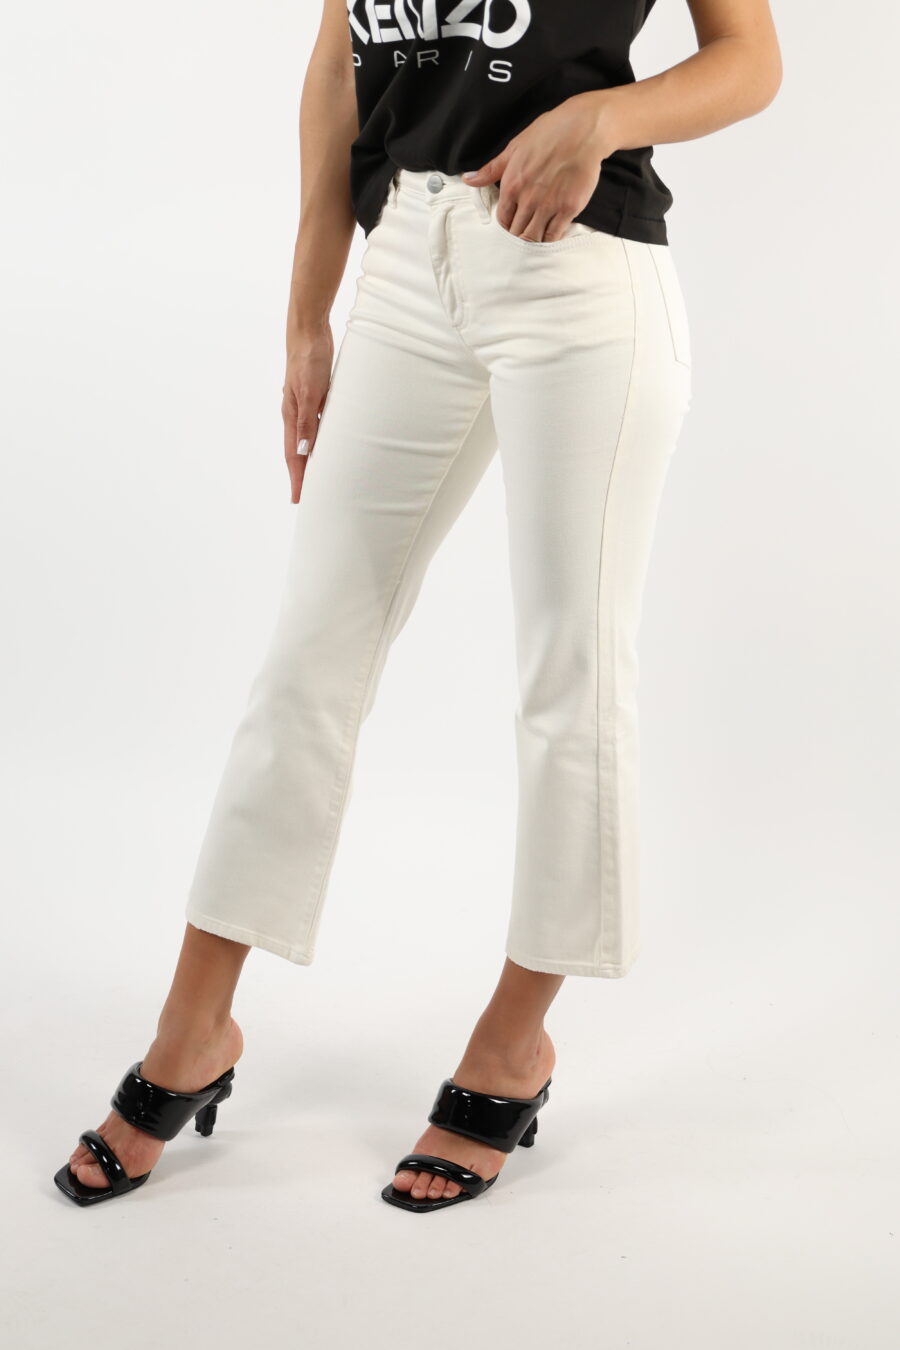 Pantalón blanco crema "Pam" con bota ancha - 110676